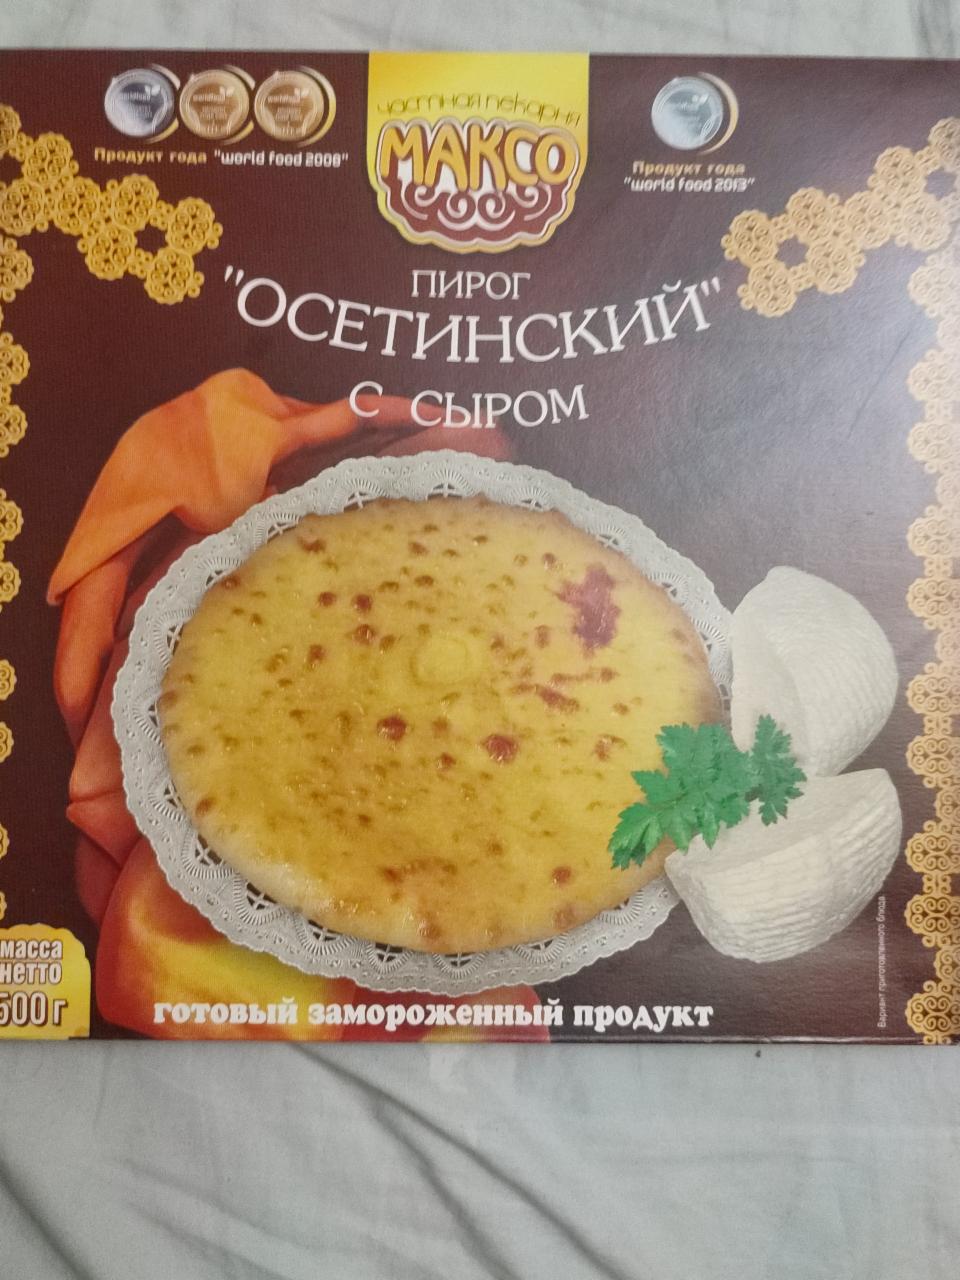 Фото - Осетинский пирог с сыром Максо